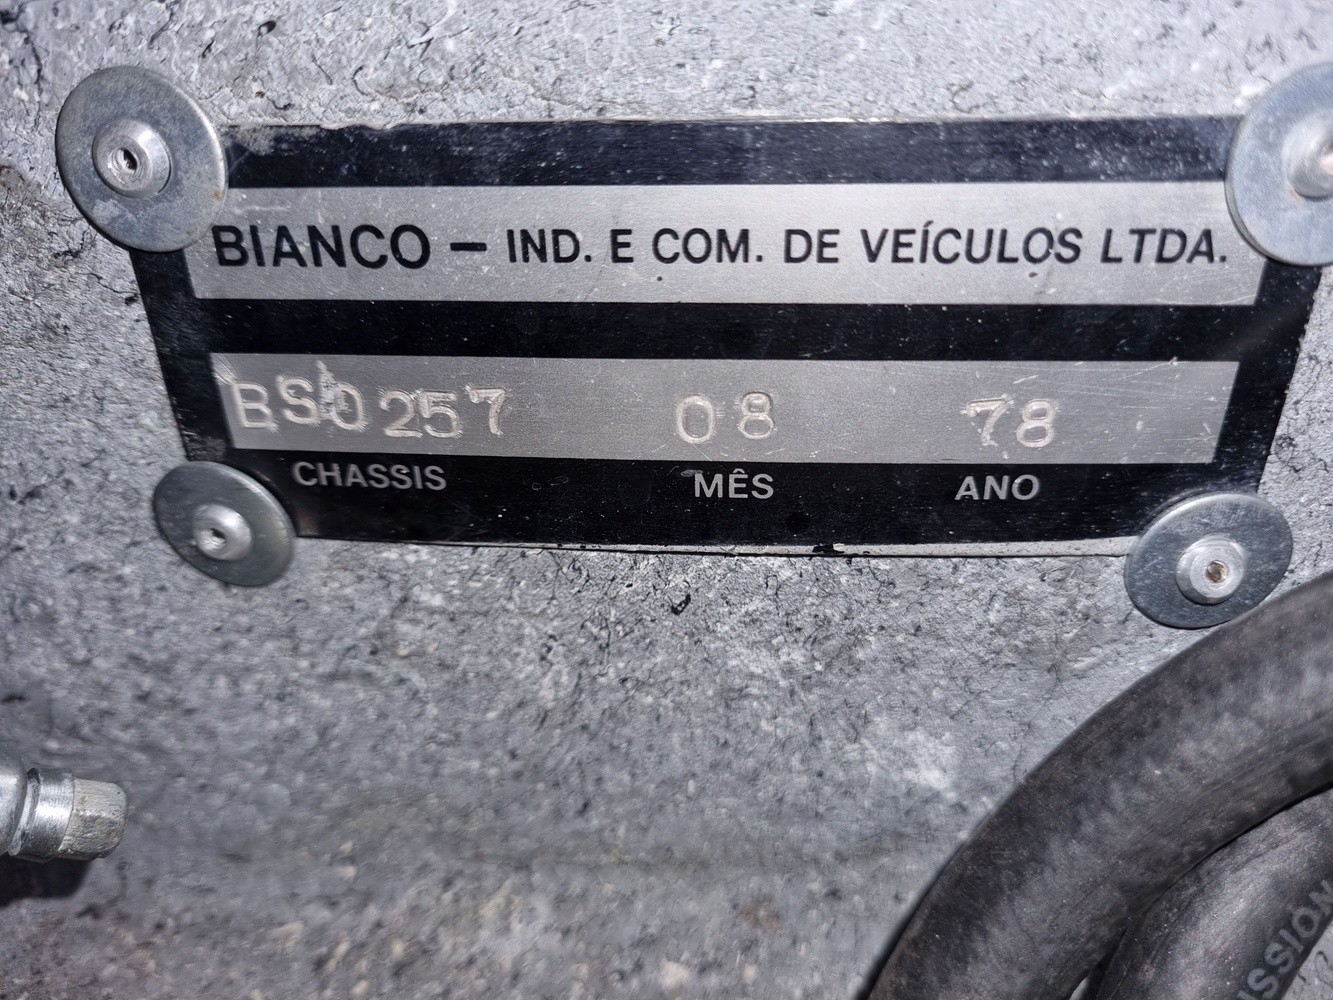 Редкий бразильский спорткар Bianco S, о котором вы не слышали